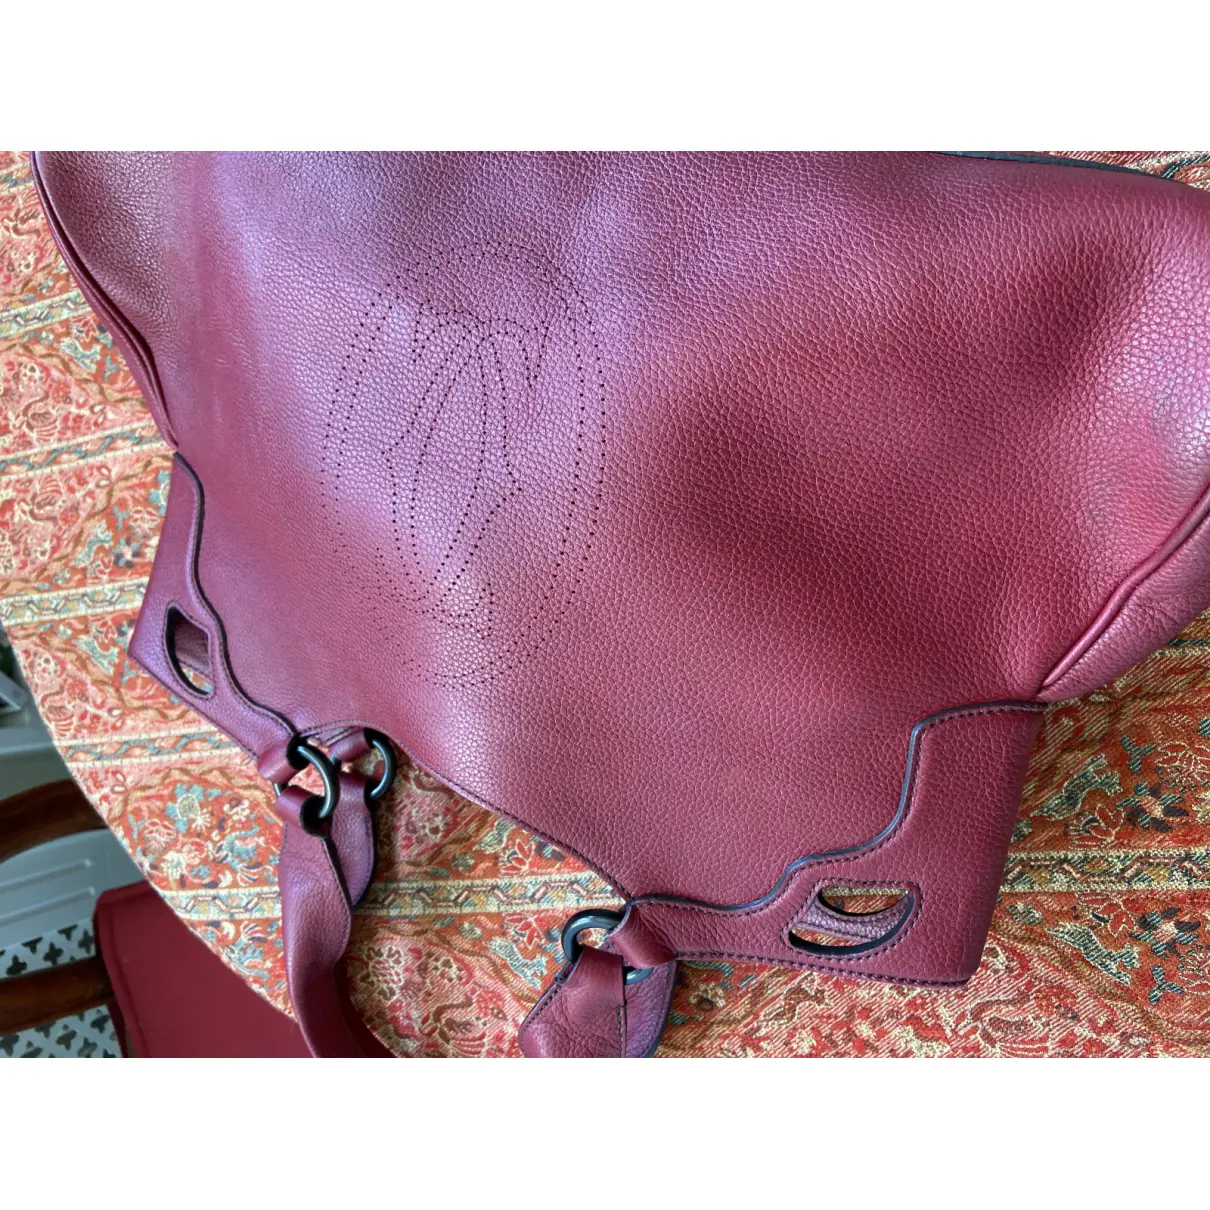 Marcello leather handbag Cartier